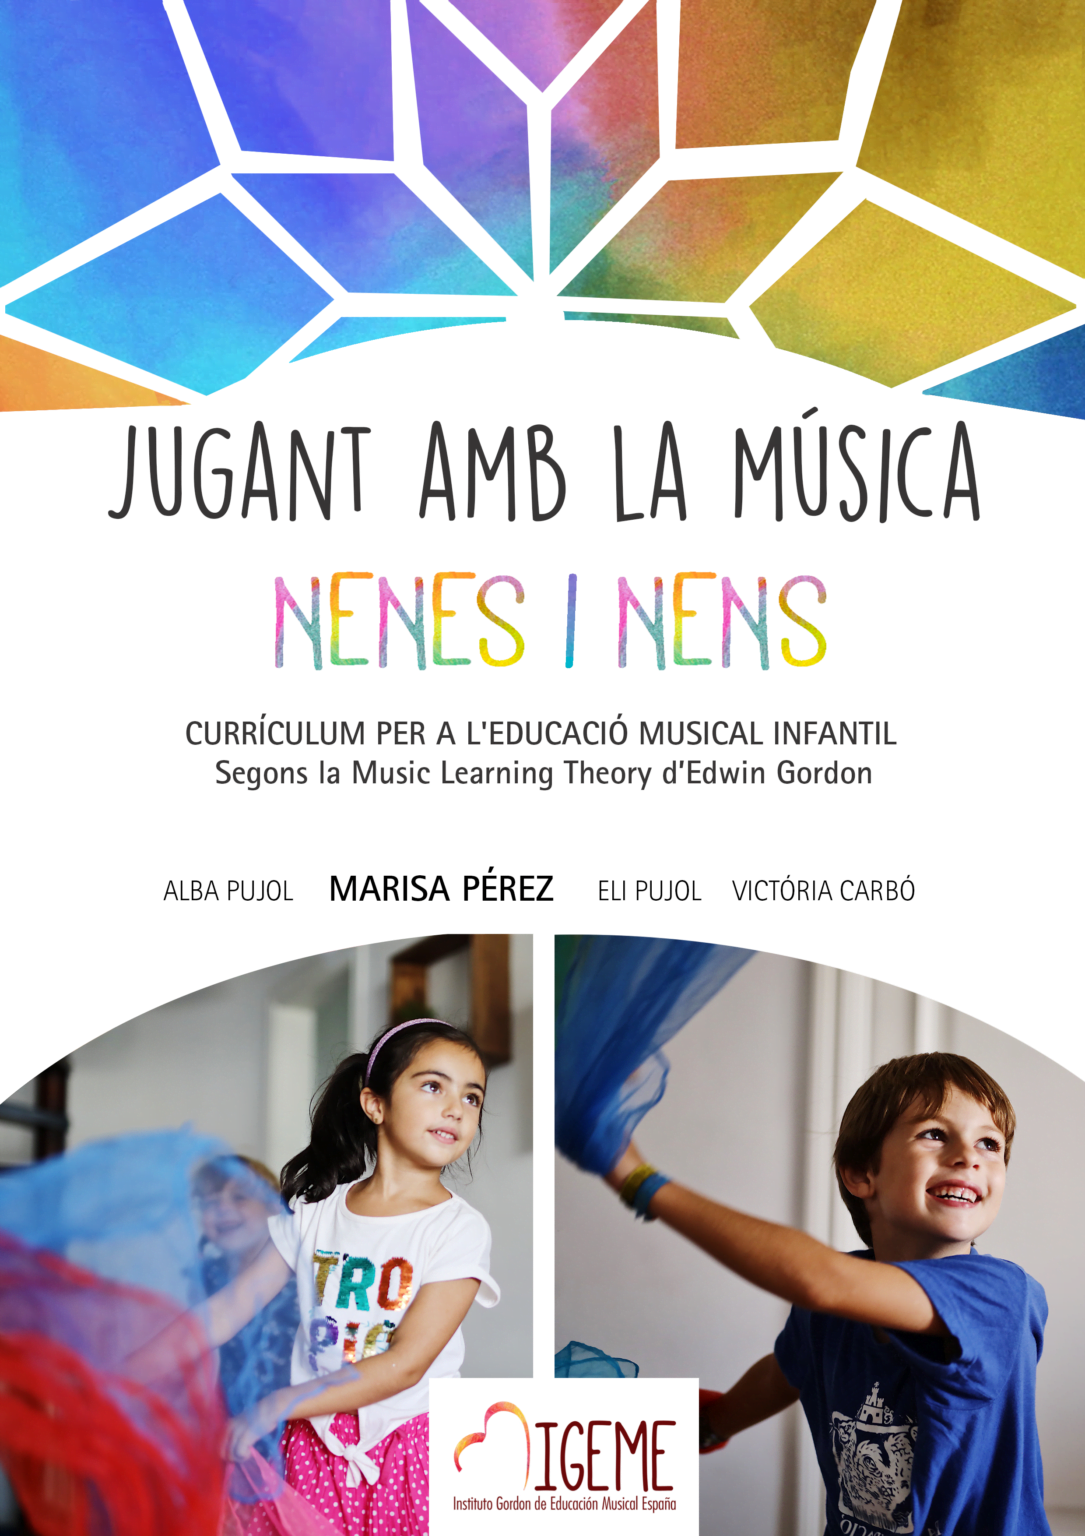 Igeme Instituto Gordón De Educación Musical España 7297